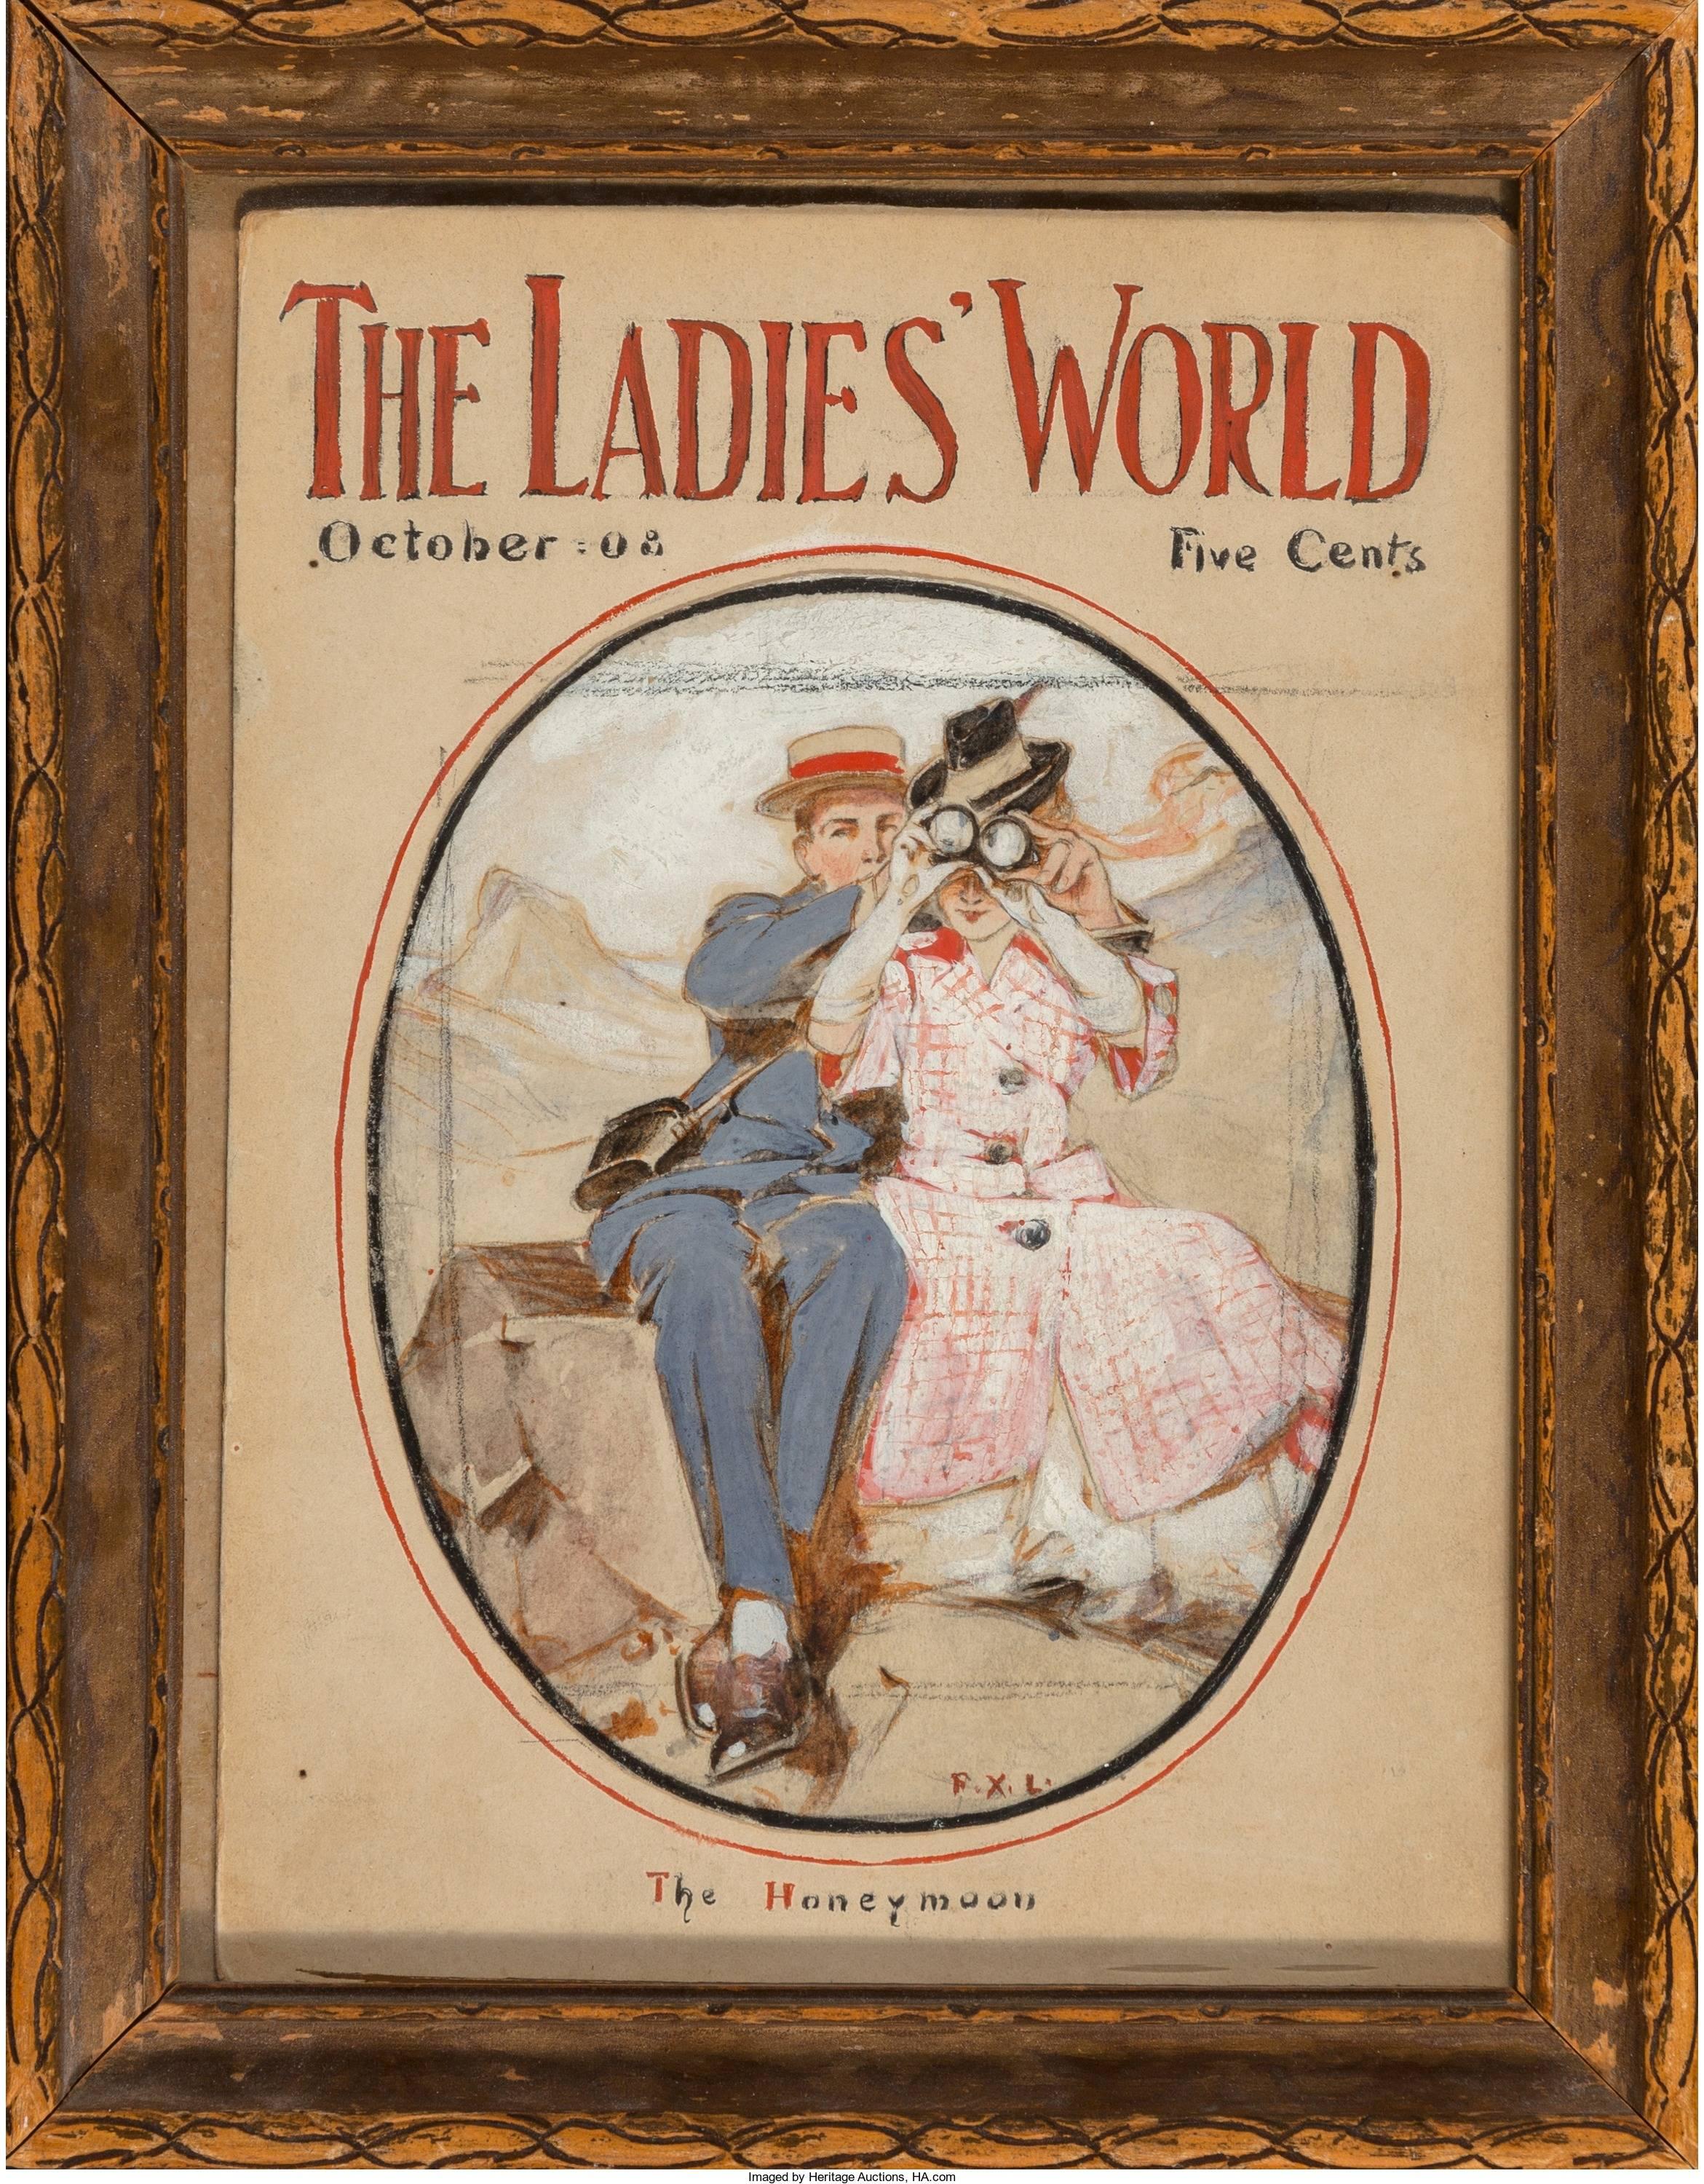 The Honeymoon, Titelseite des Ladies World Magazine, Oktober 1908 – Painting von Frank Xavier Leyendecker